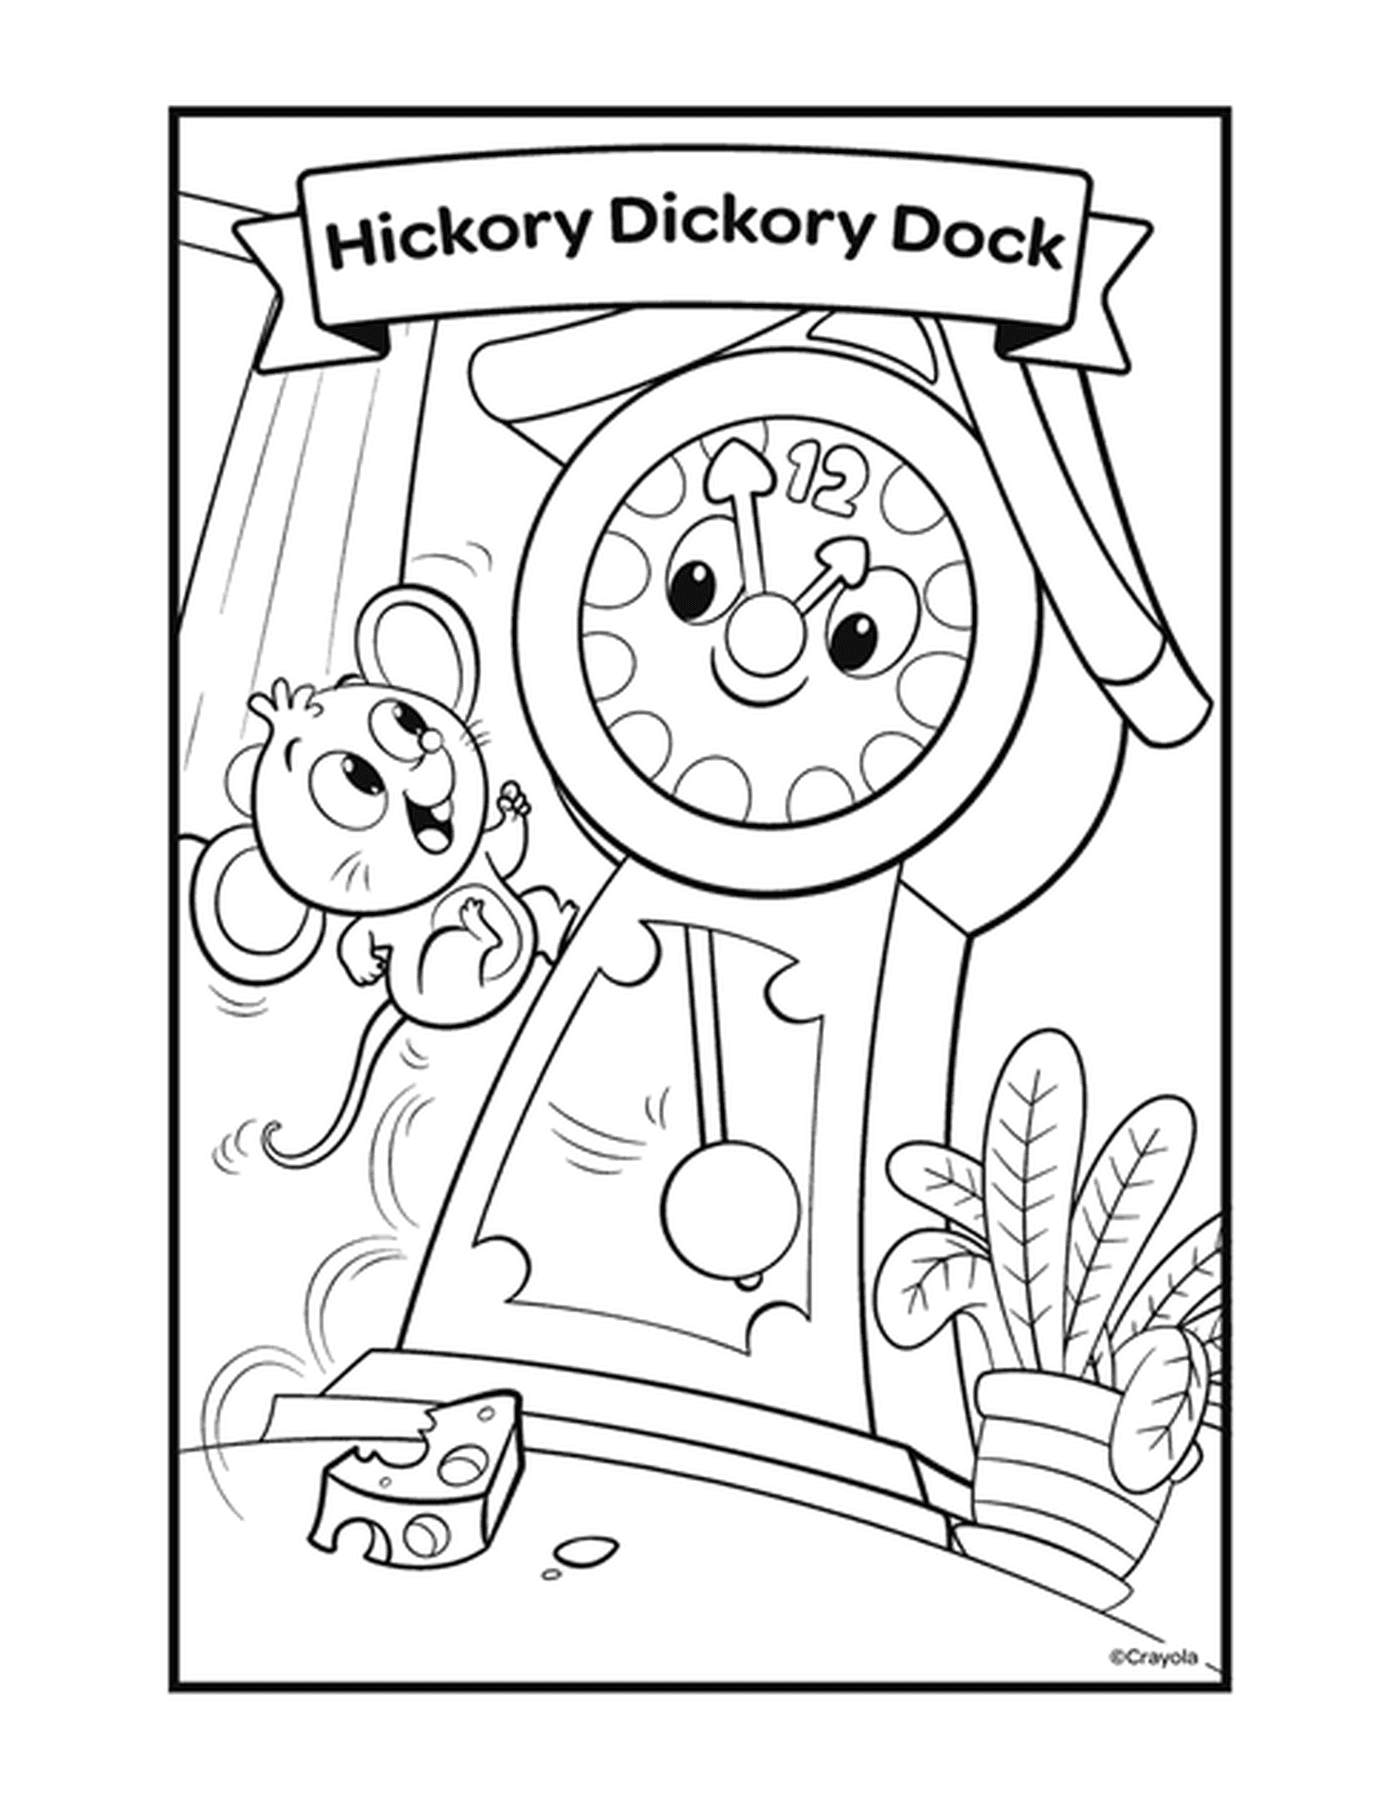  The Hickory Dickory Dock con un orologio e un mouse 